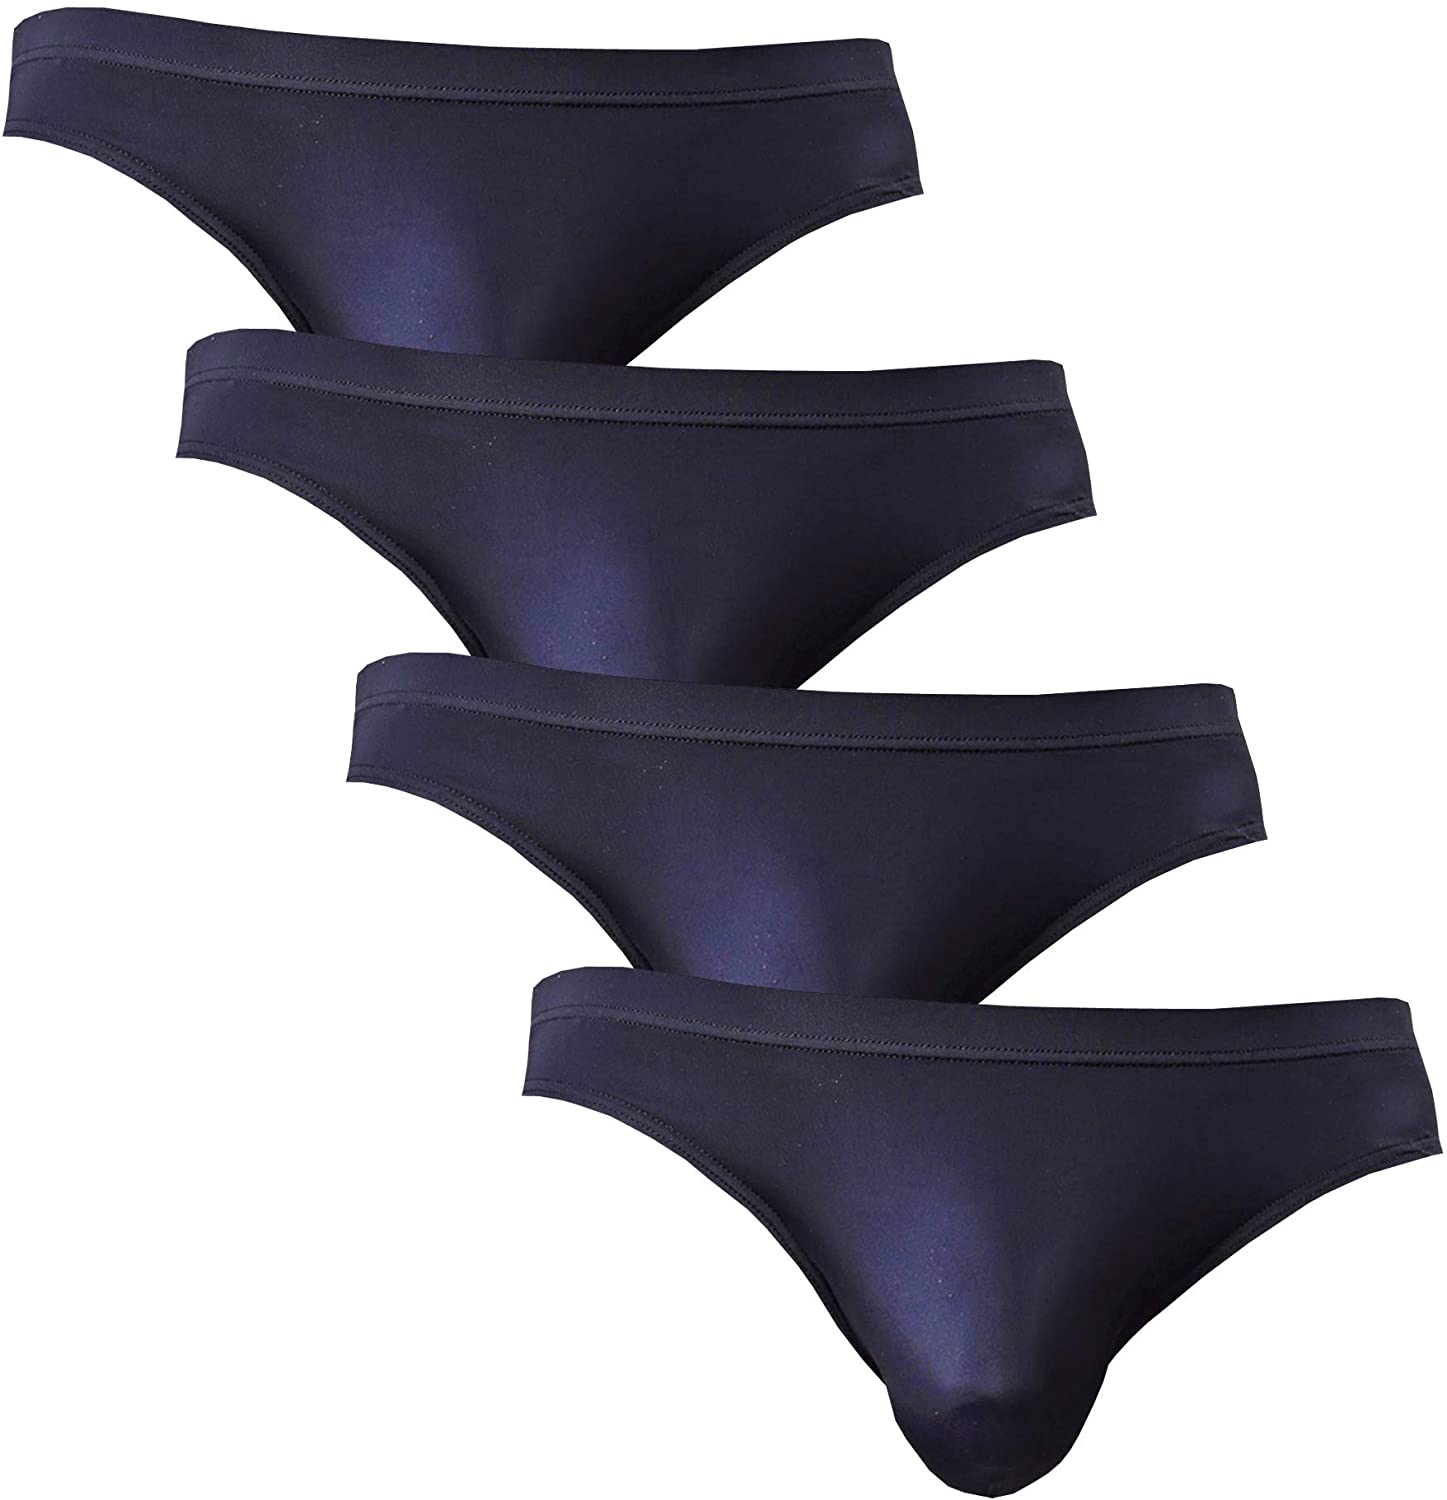 WINDAY Mens Briefs Ice Silk Triangle Bikinis Underwear Print Breathable Briefs 